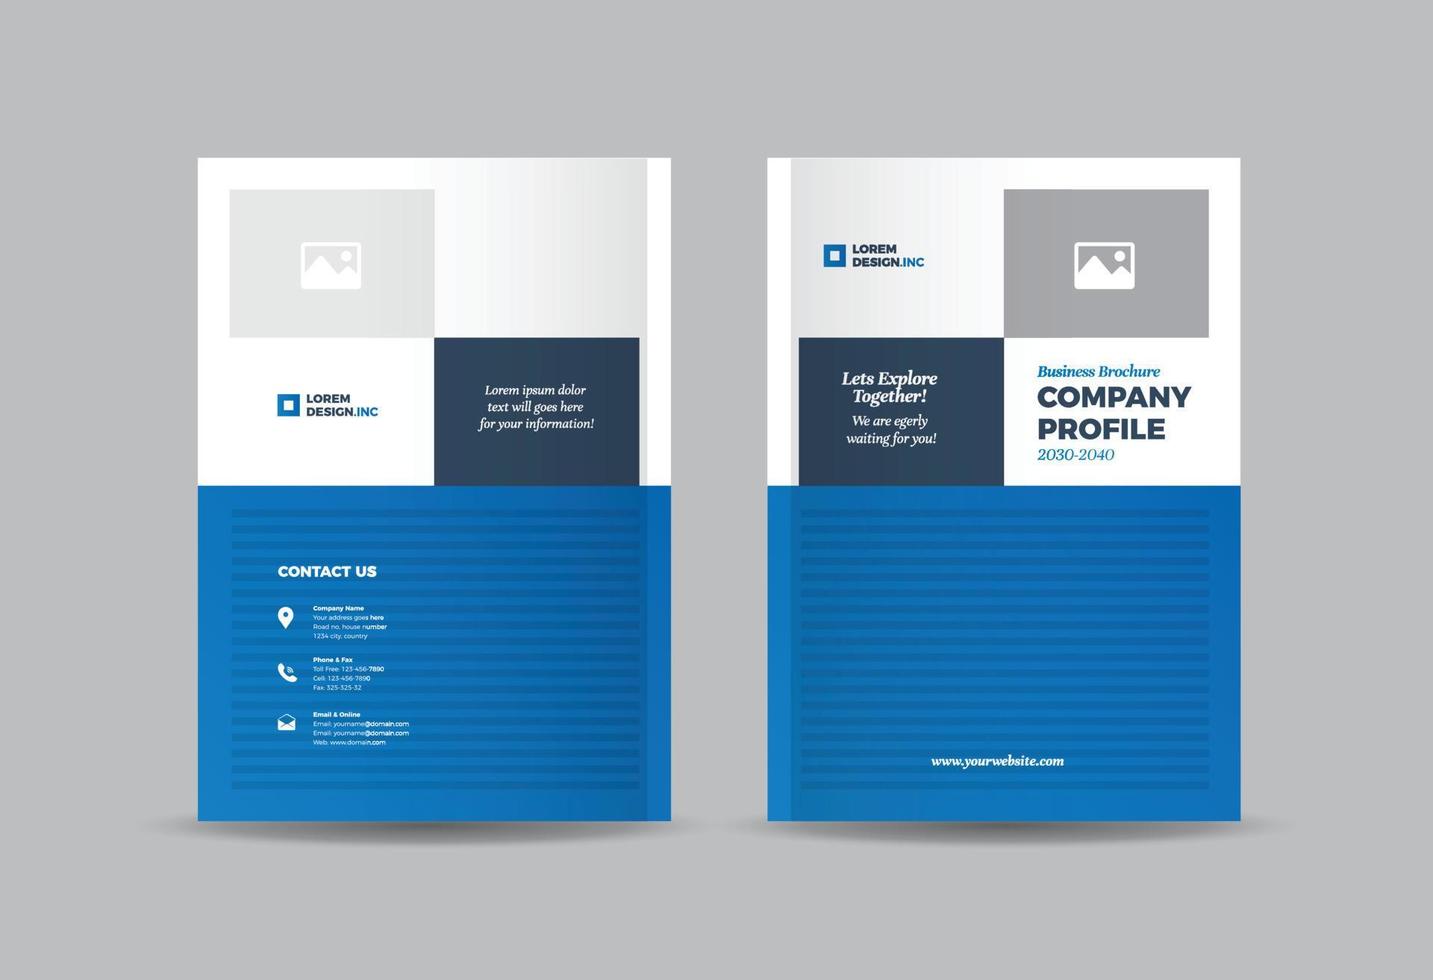 Umschlaggestaltung für Geschäftsbroschüren oder Umschlag für Jahresbericht und Firmenprofil oder Umschlag für Broschüre und Katalog vektor